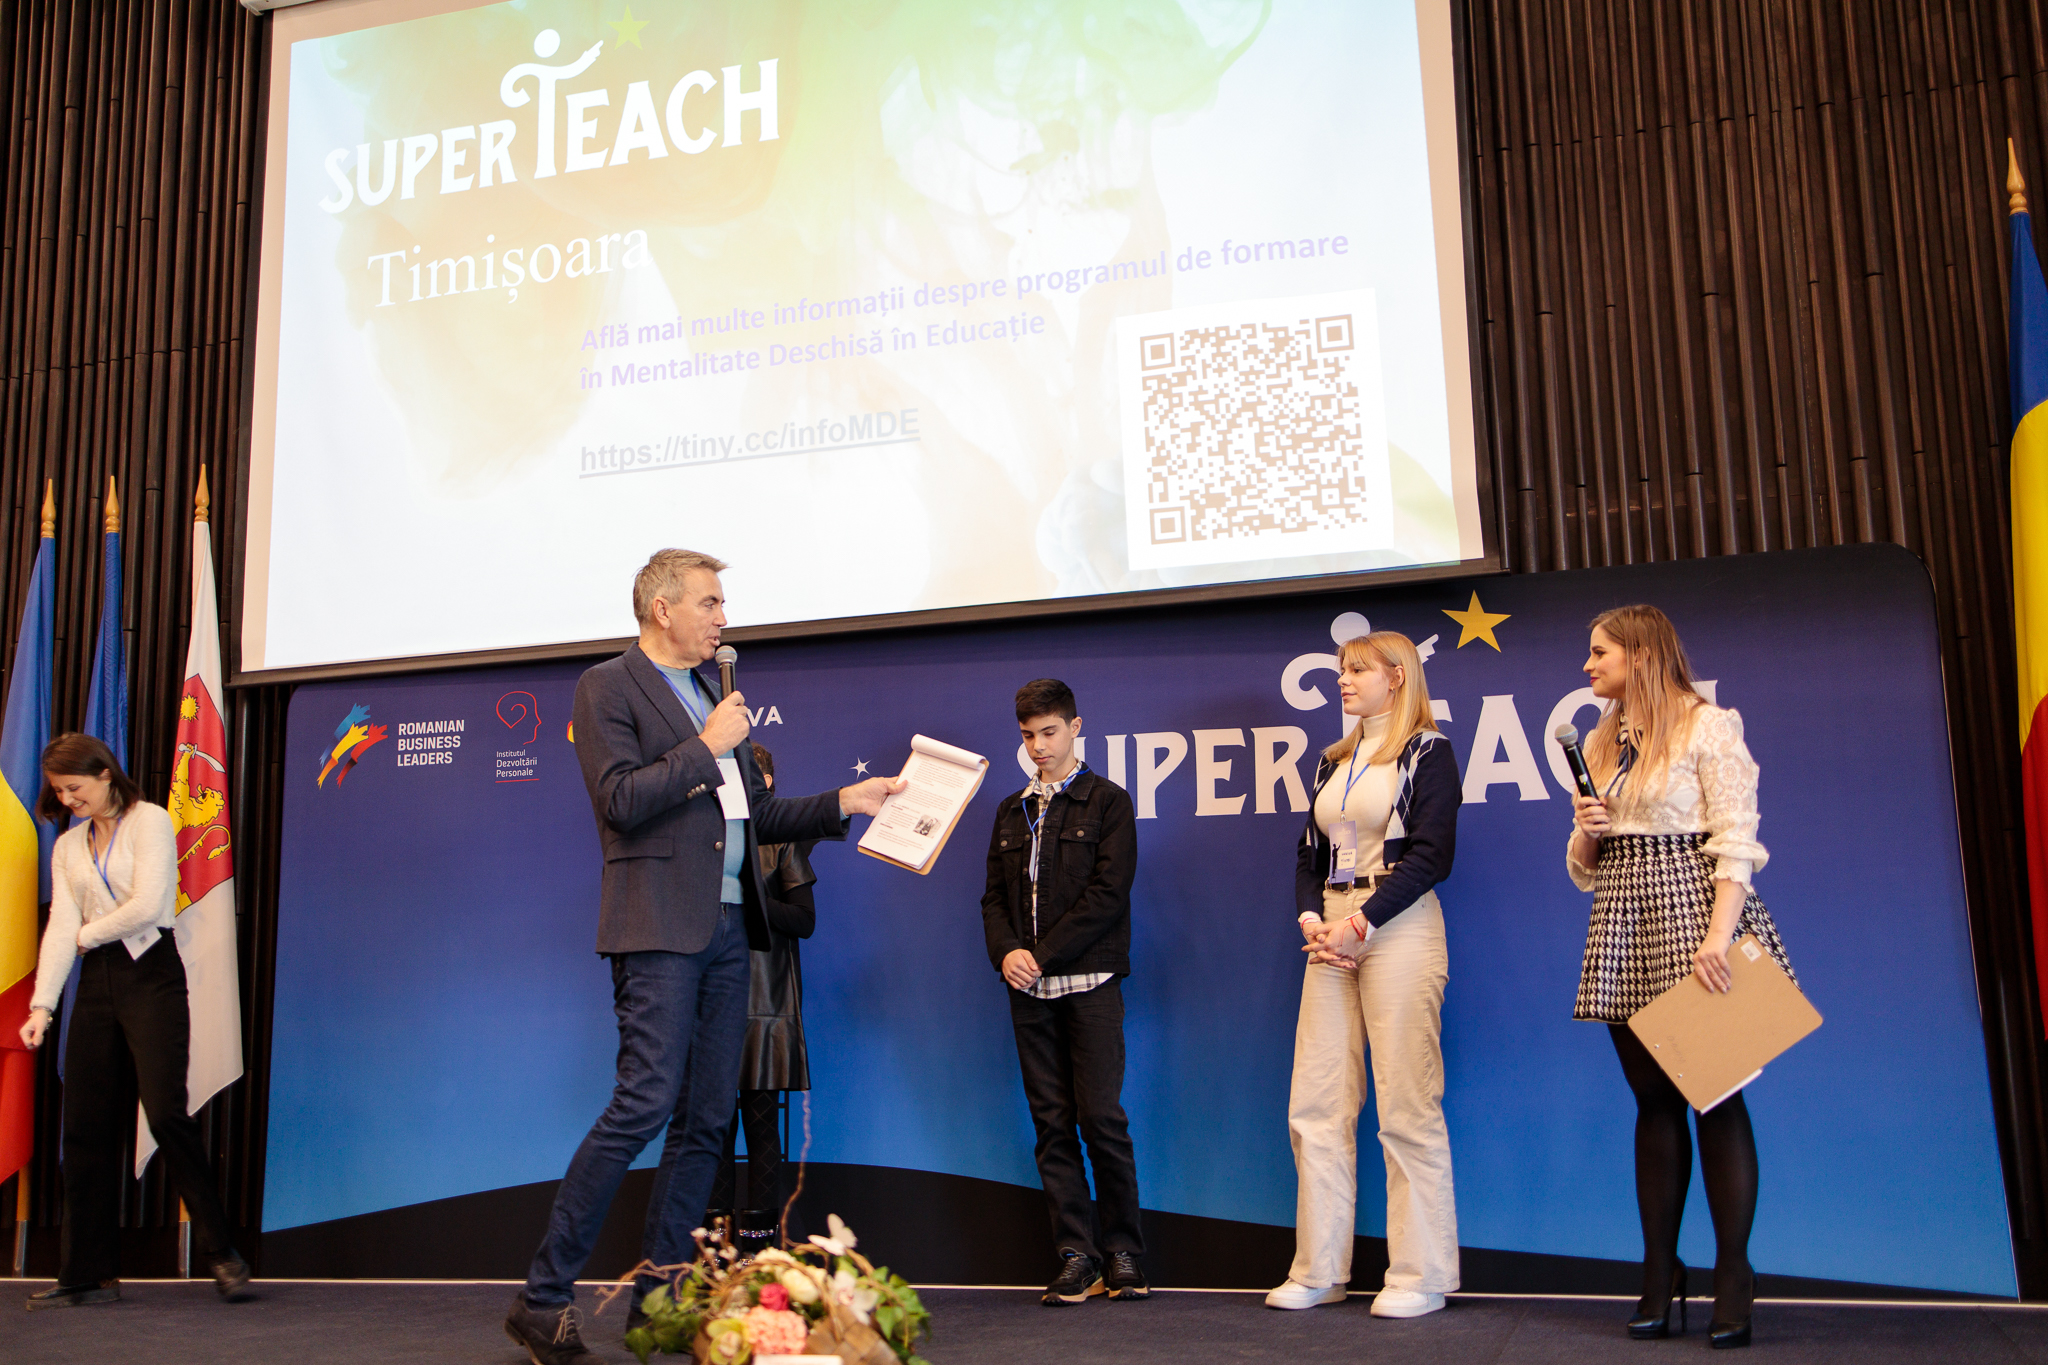 Dragoș Anastasiu, la Conferința SuperTeach Timișoara: „A trata toți elevii la fel este ca și cum am trata un întreg spital cu același medicament”